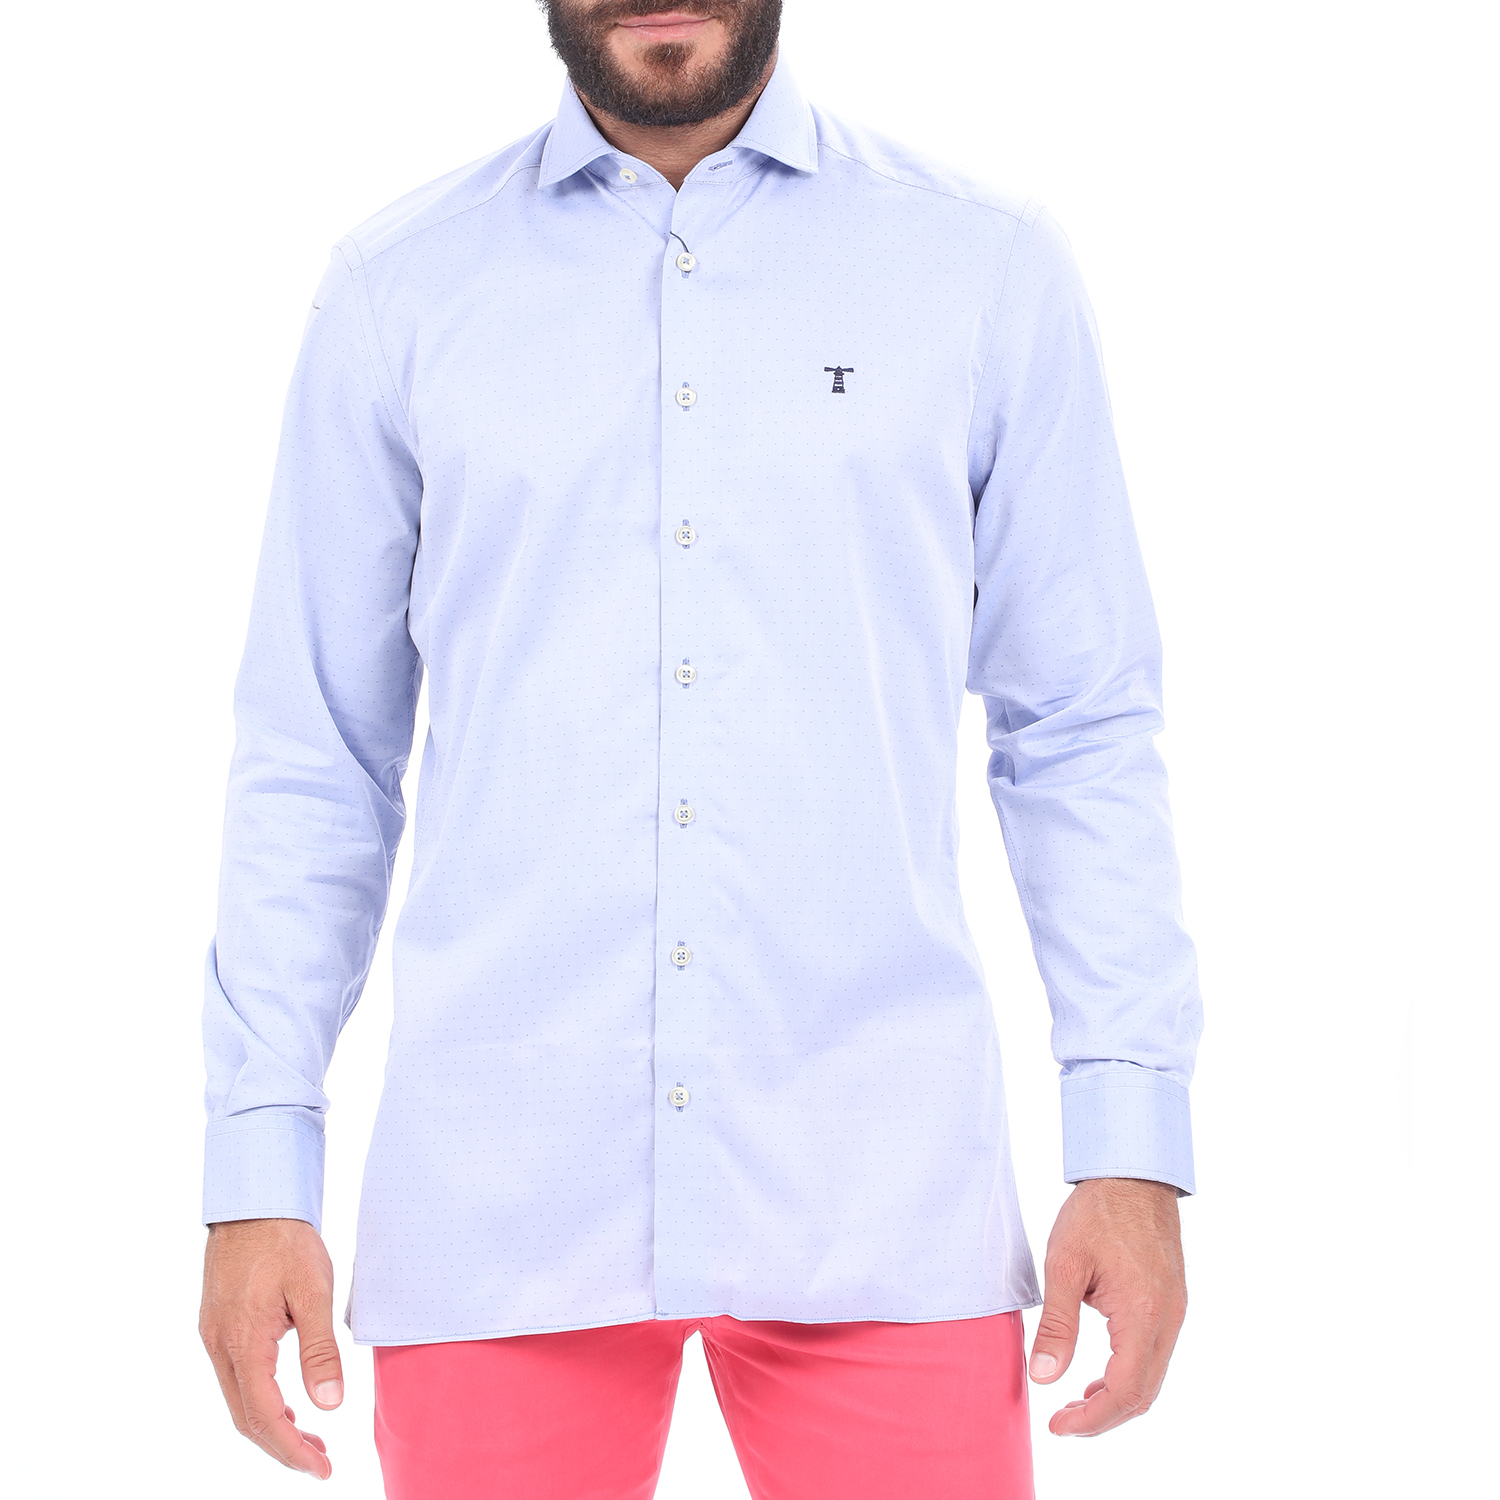 Ανδρικά/Ρούχα/Πουκάμισα/Μακρυμάνικα HAMPTONS - Ανδρικό πουκάμισο HAMPTONS MICRODESIGN μπλε